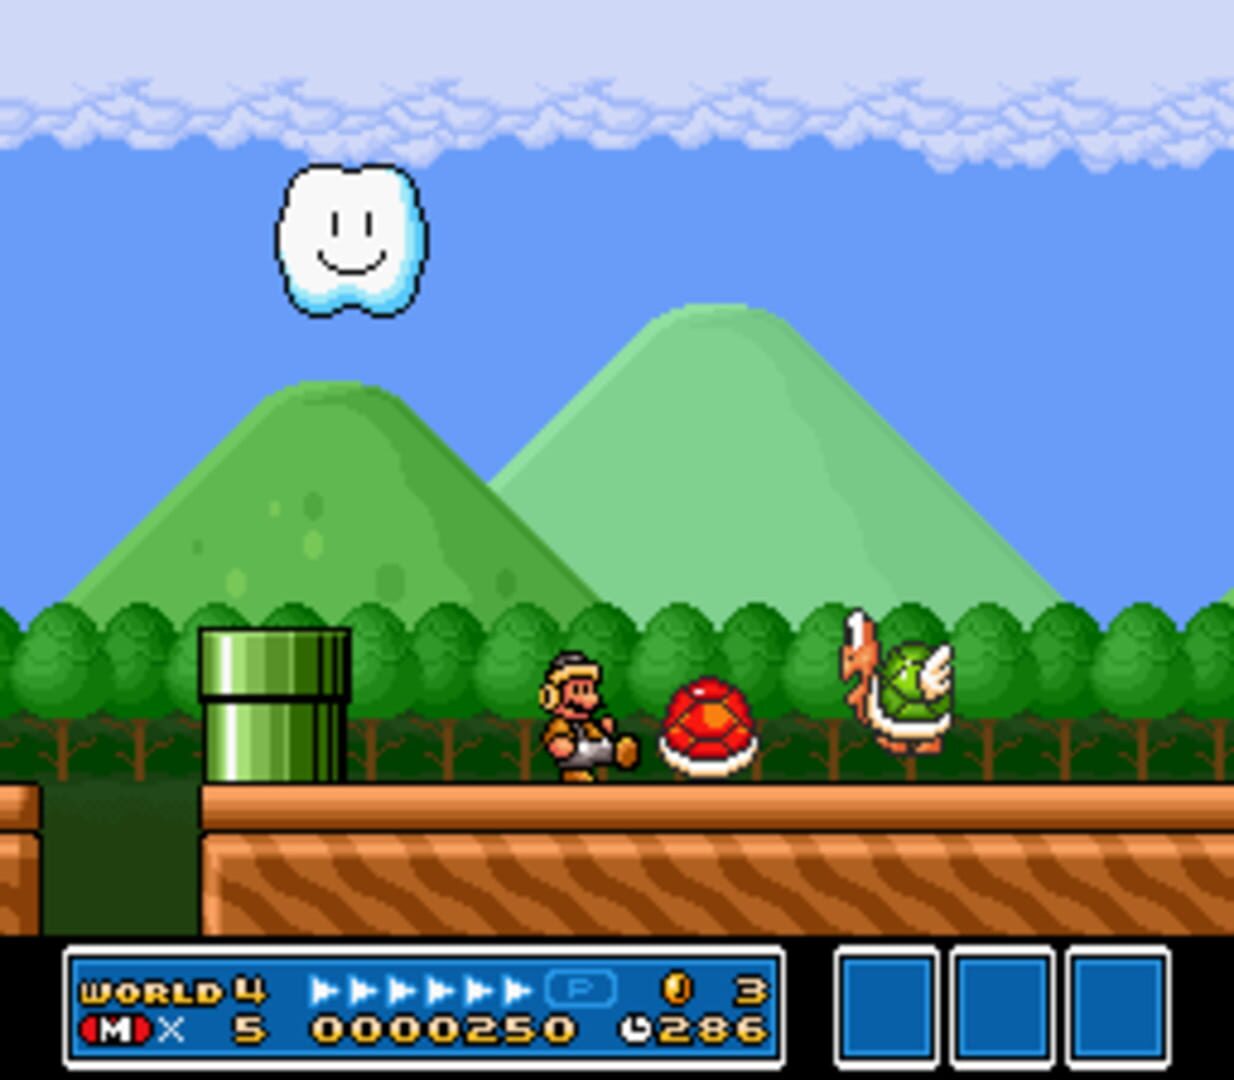 Captura de pantalla - Super Mario All-Stars